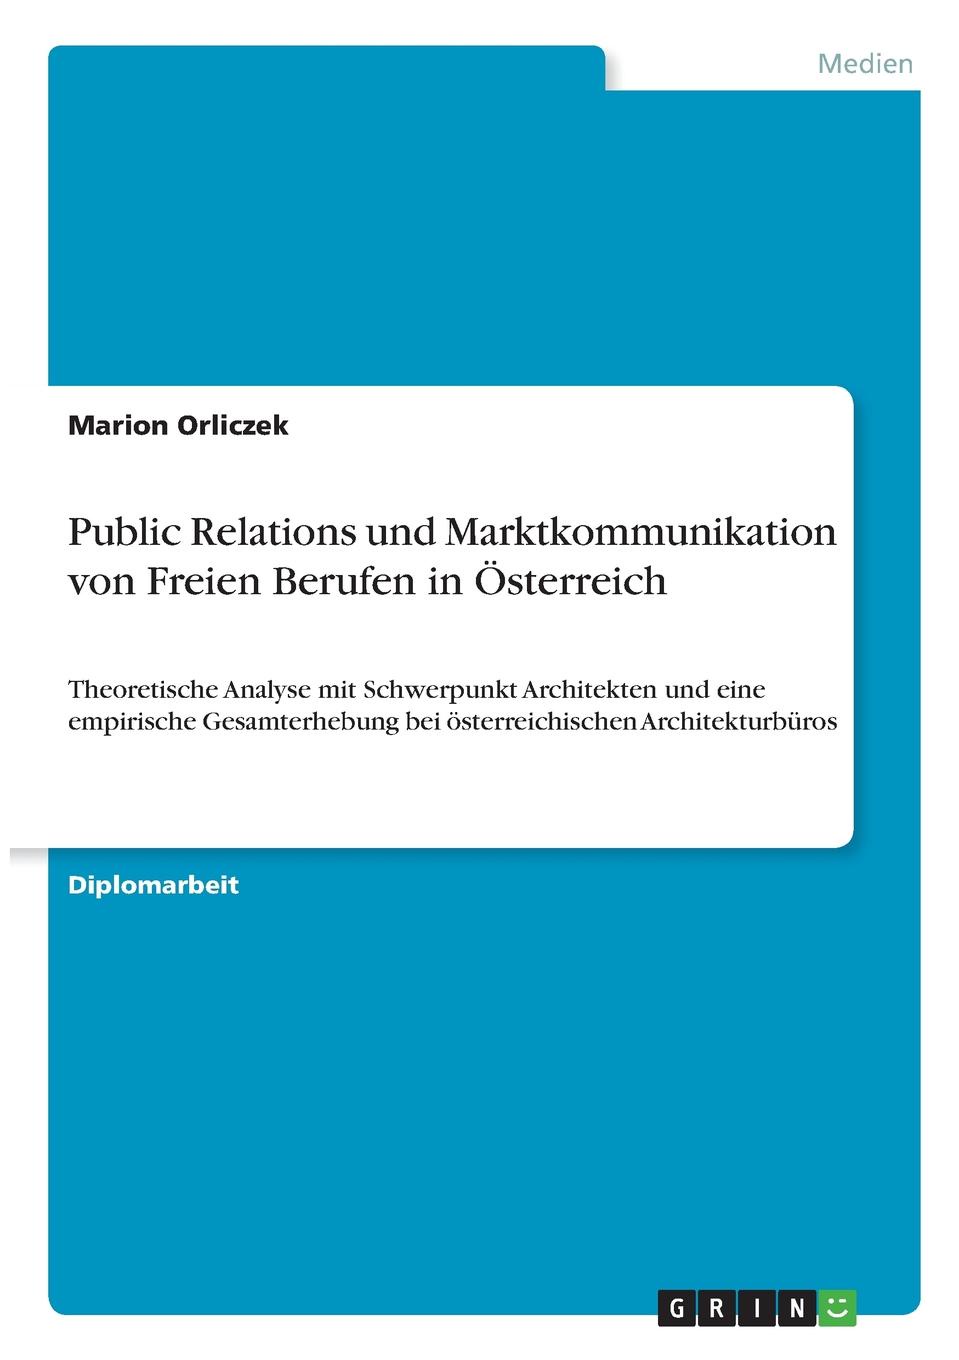 Public Relations und Marktkommunikation von Freien Berufen in Osterreich